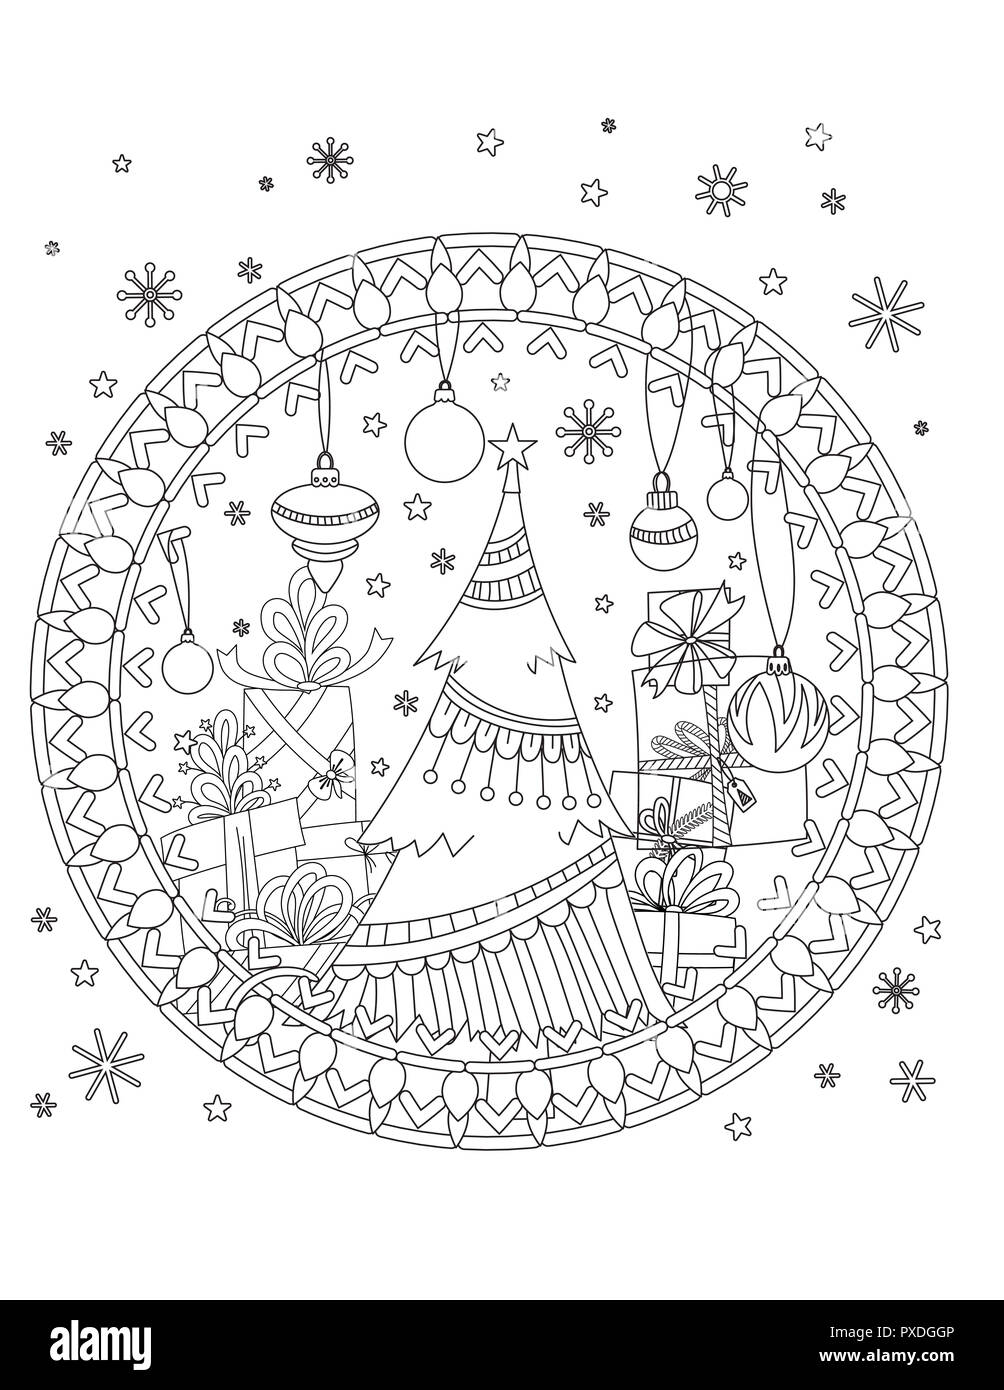 Natale nella pagina di colorazione. Adulto libro da colorare. Albero di natale, decorazione, confezioni regalo, nastri, sfere e i fiocchi di neve. Disegnato a mano illustrazione di contorno. Foto Stock